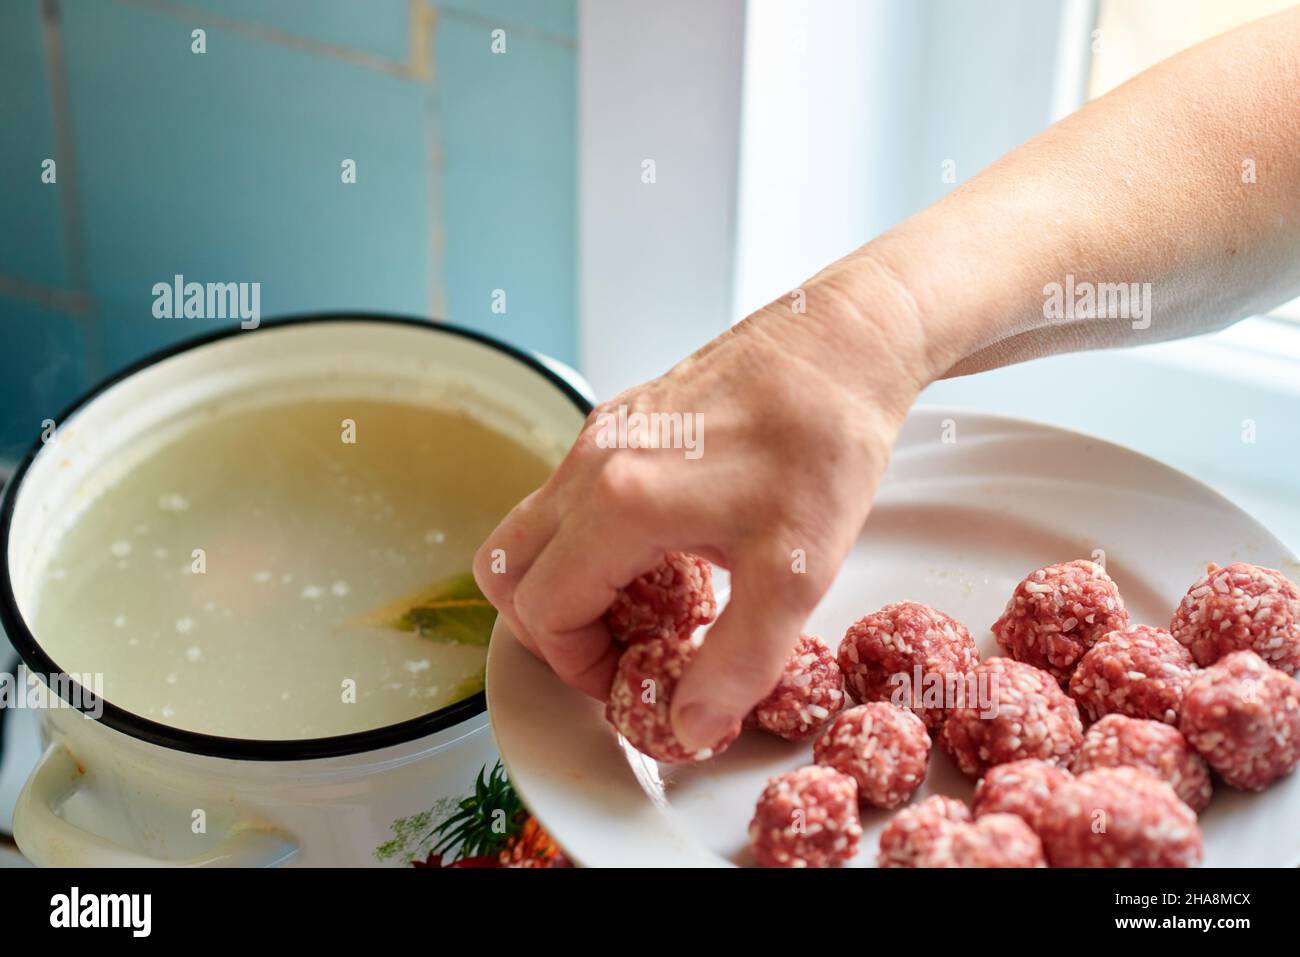 La main d'une femme prend des boulettes de viande crues d'une assiette et les jette dans un pot de soupe bouillante.Une cuisine maison saine. Banque D'Images